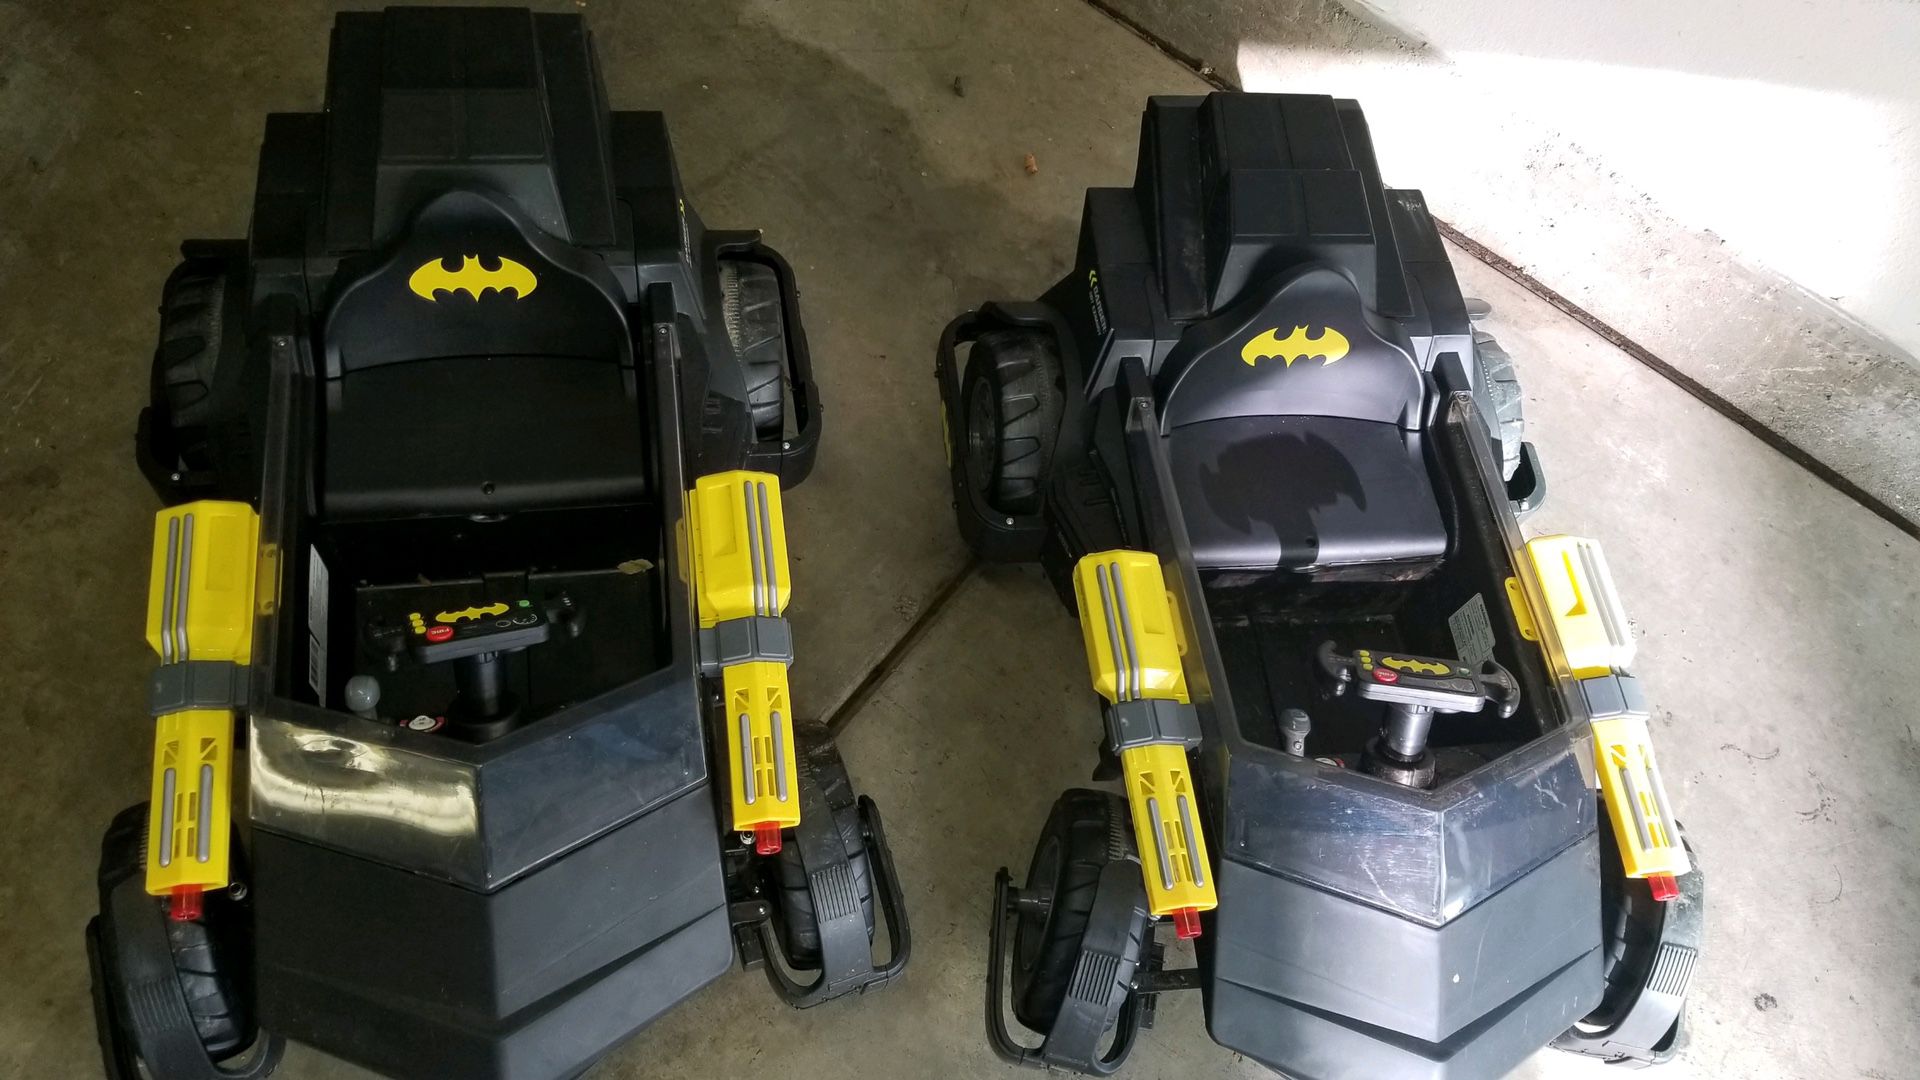 Bat mobiles!